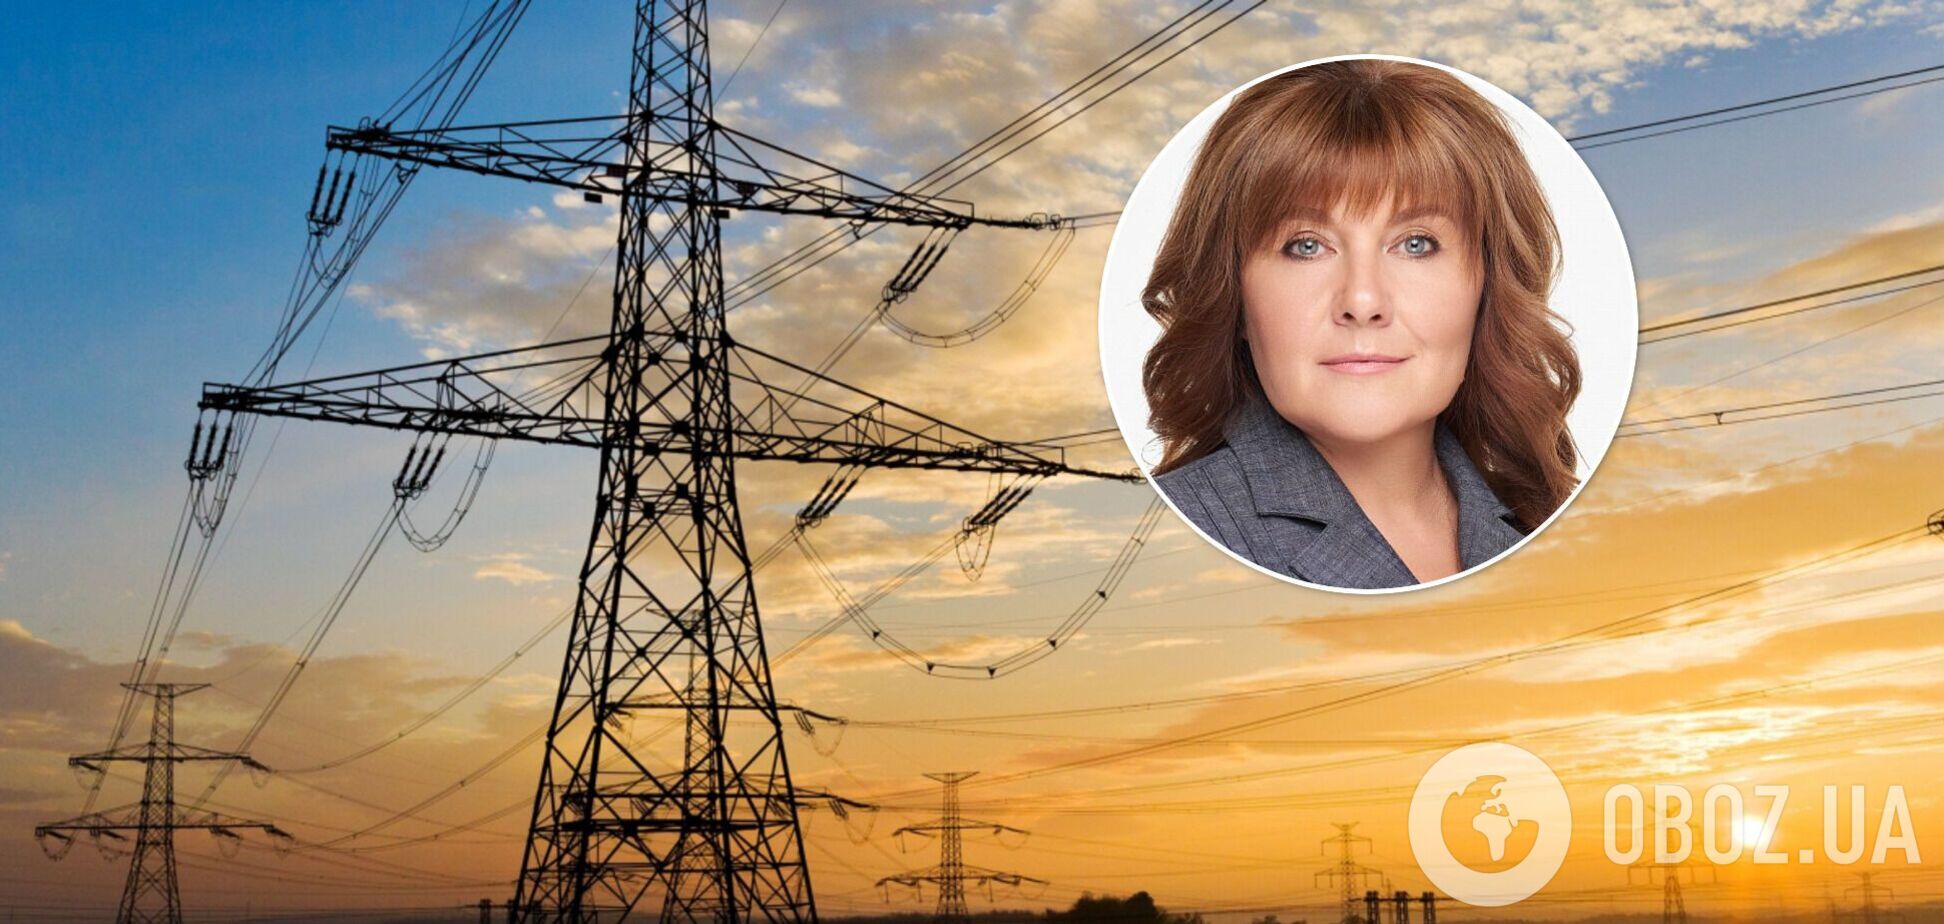 Ценовые ограничения на рынке электроэнергии провоцируют новый кризис, – нардеп Виктория Гриб